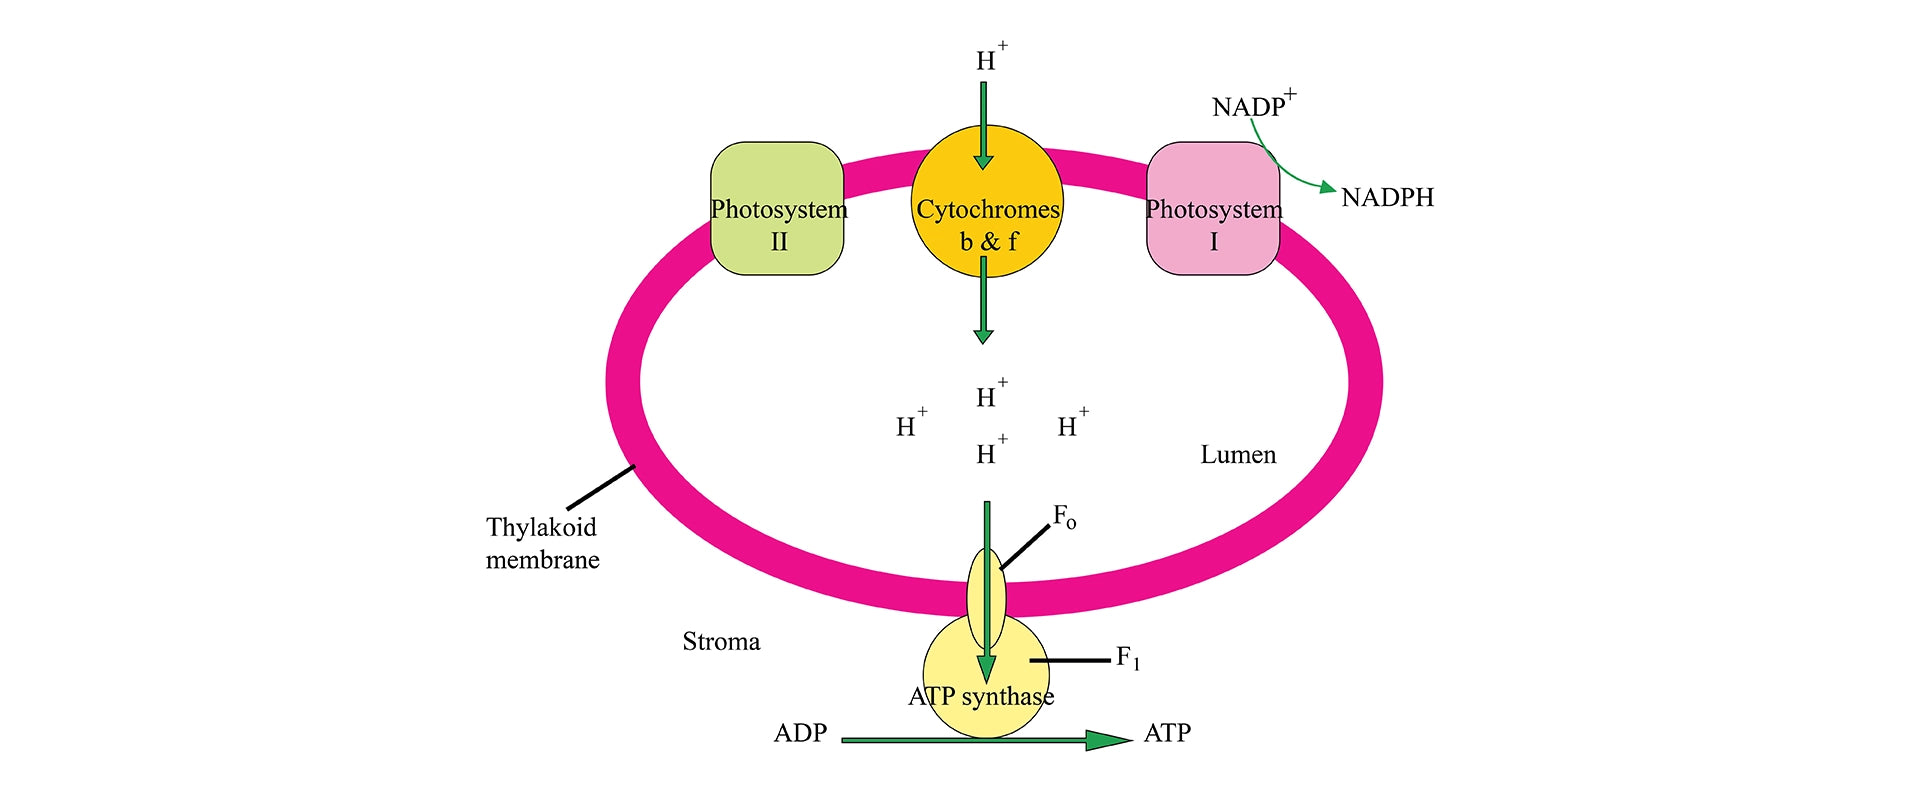 Oxidative phosphorylation